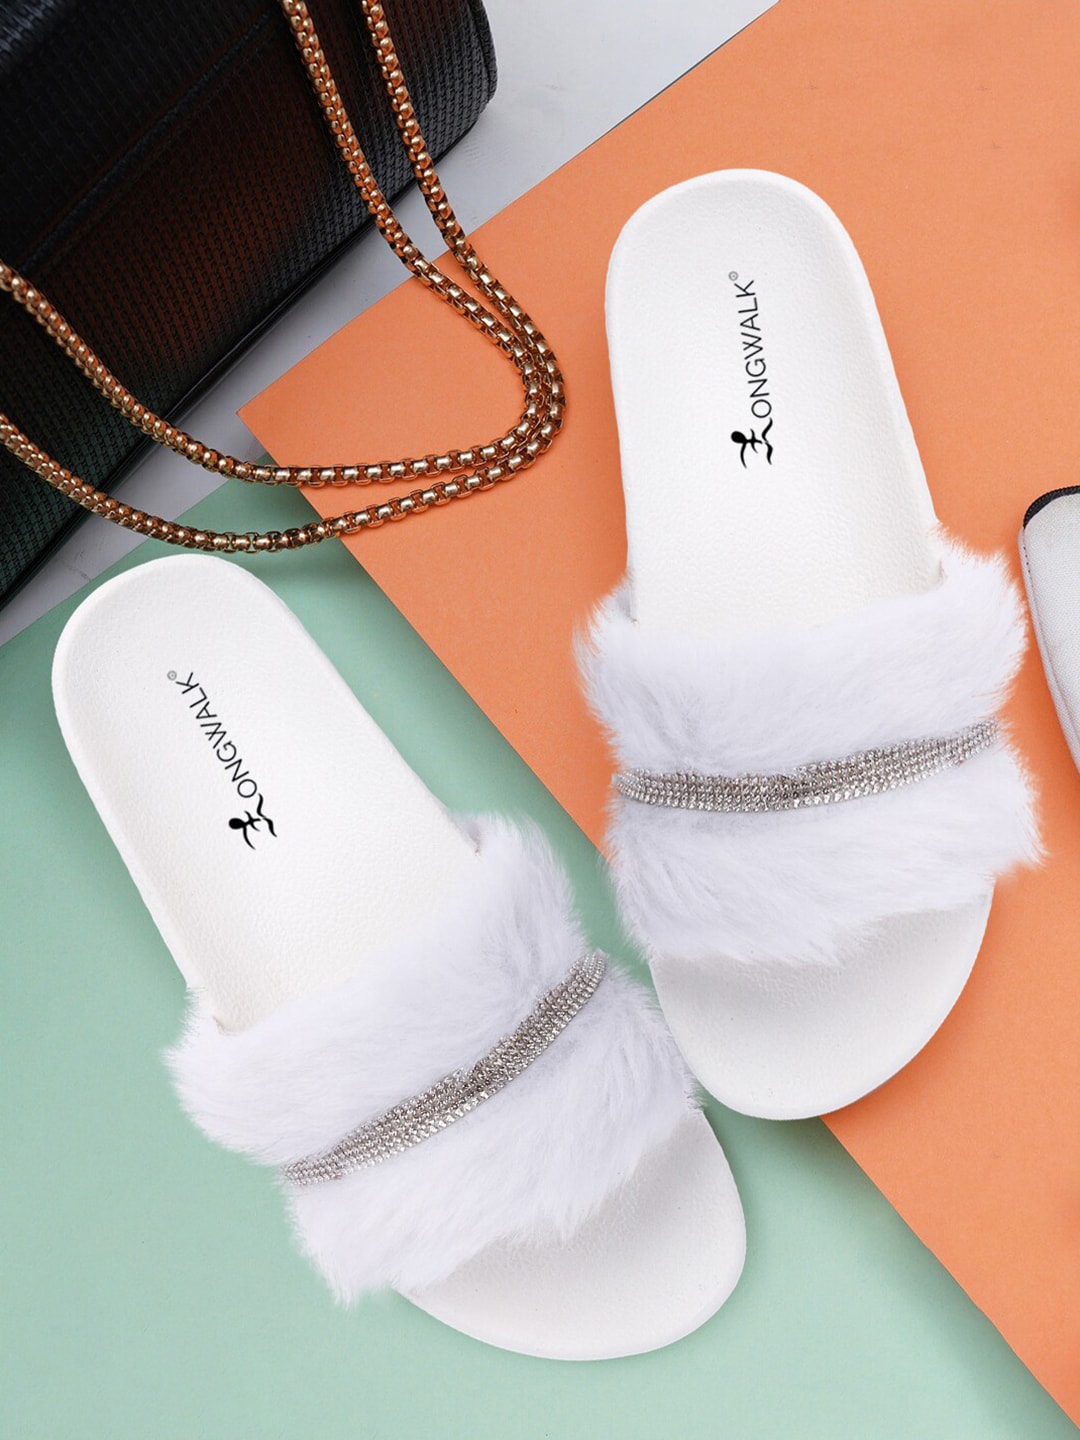 Longwalk White Wedge Fur  Heels Sandals Price in India